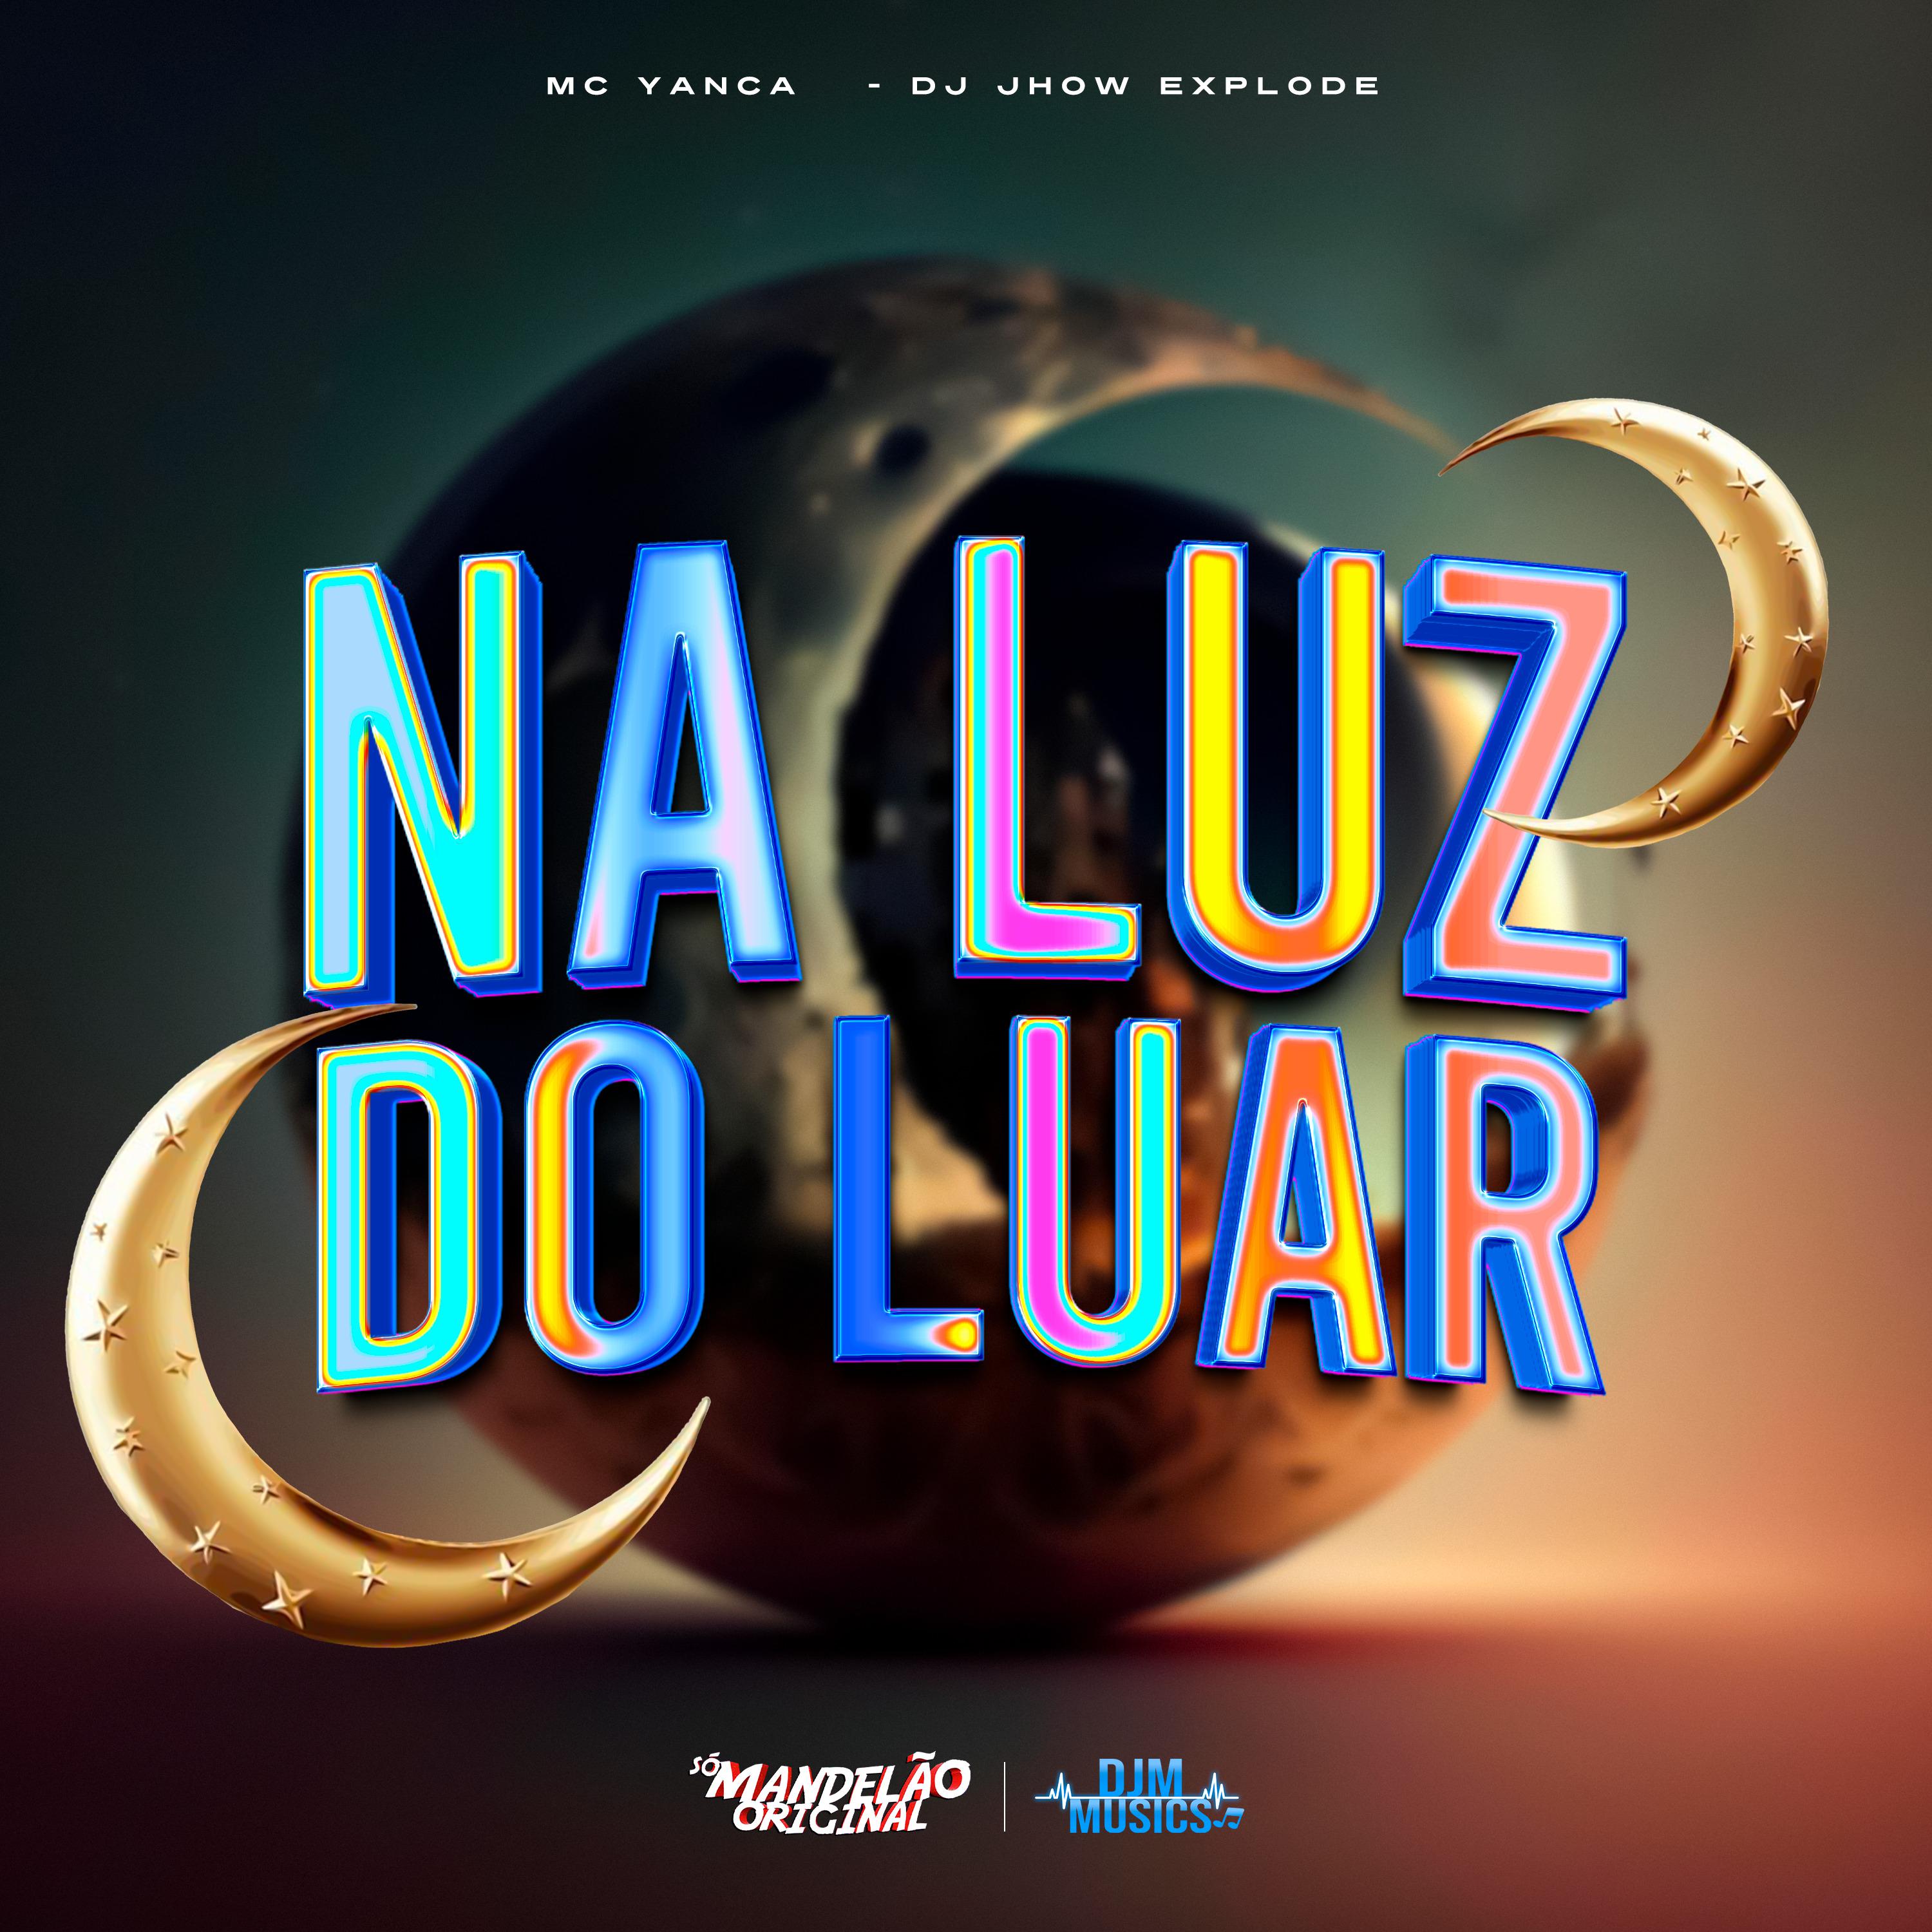 Постер альбома Na Luz do Luar